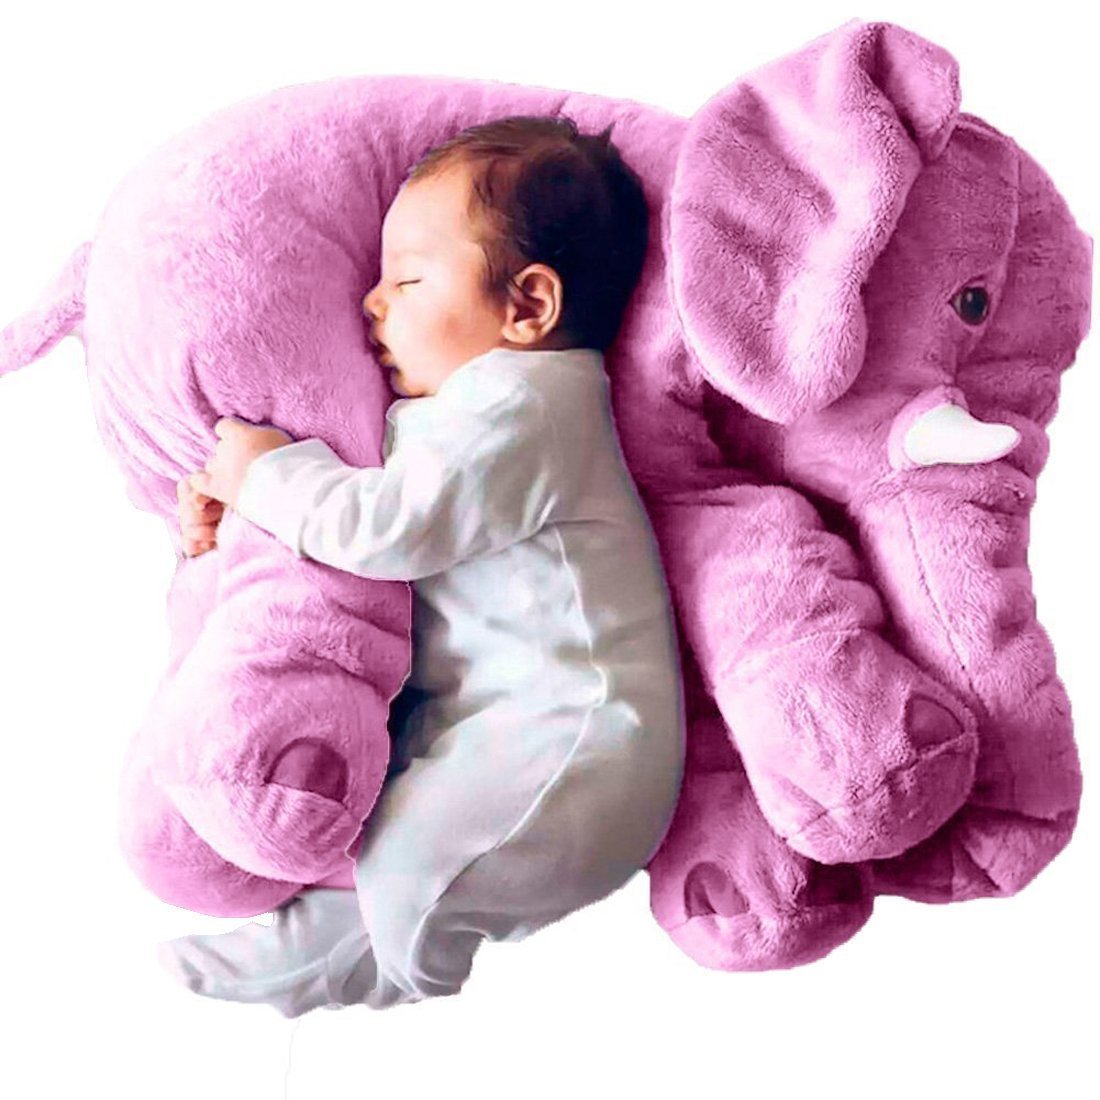 Gorgeous Elephant Stuffed Plush Toy Baby Pillow